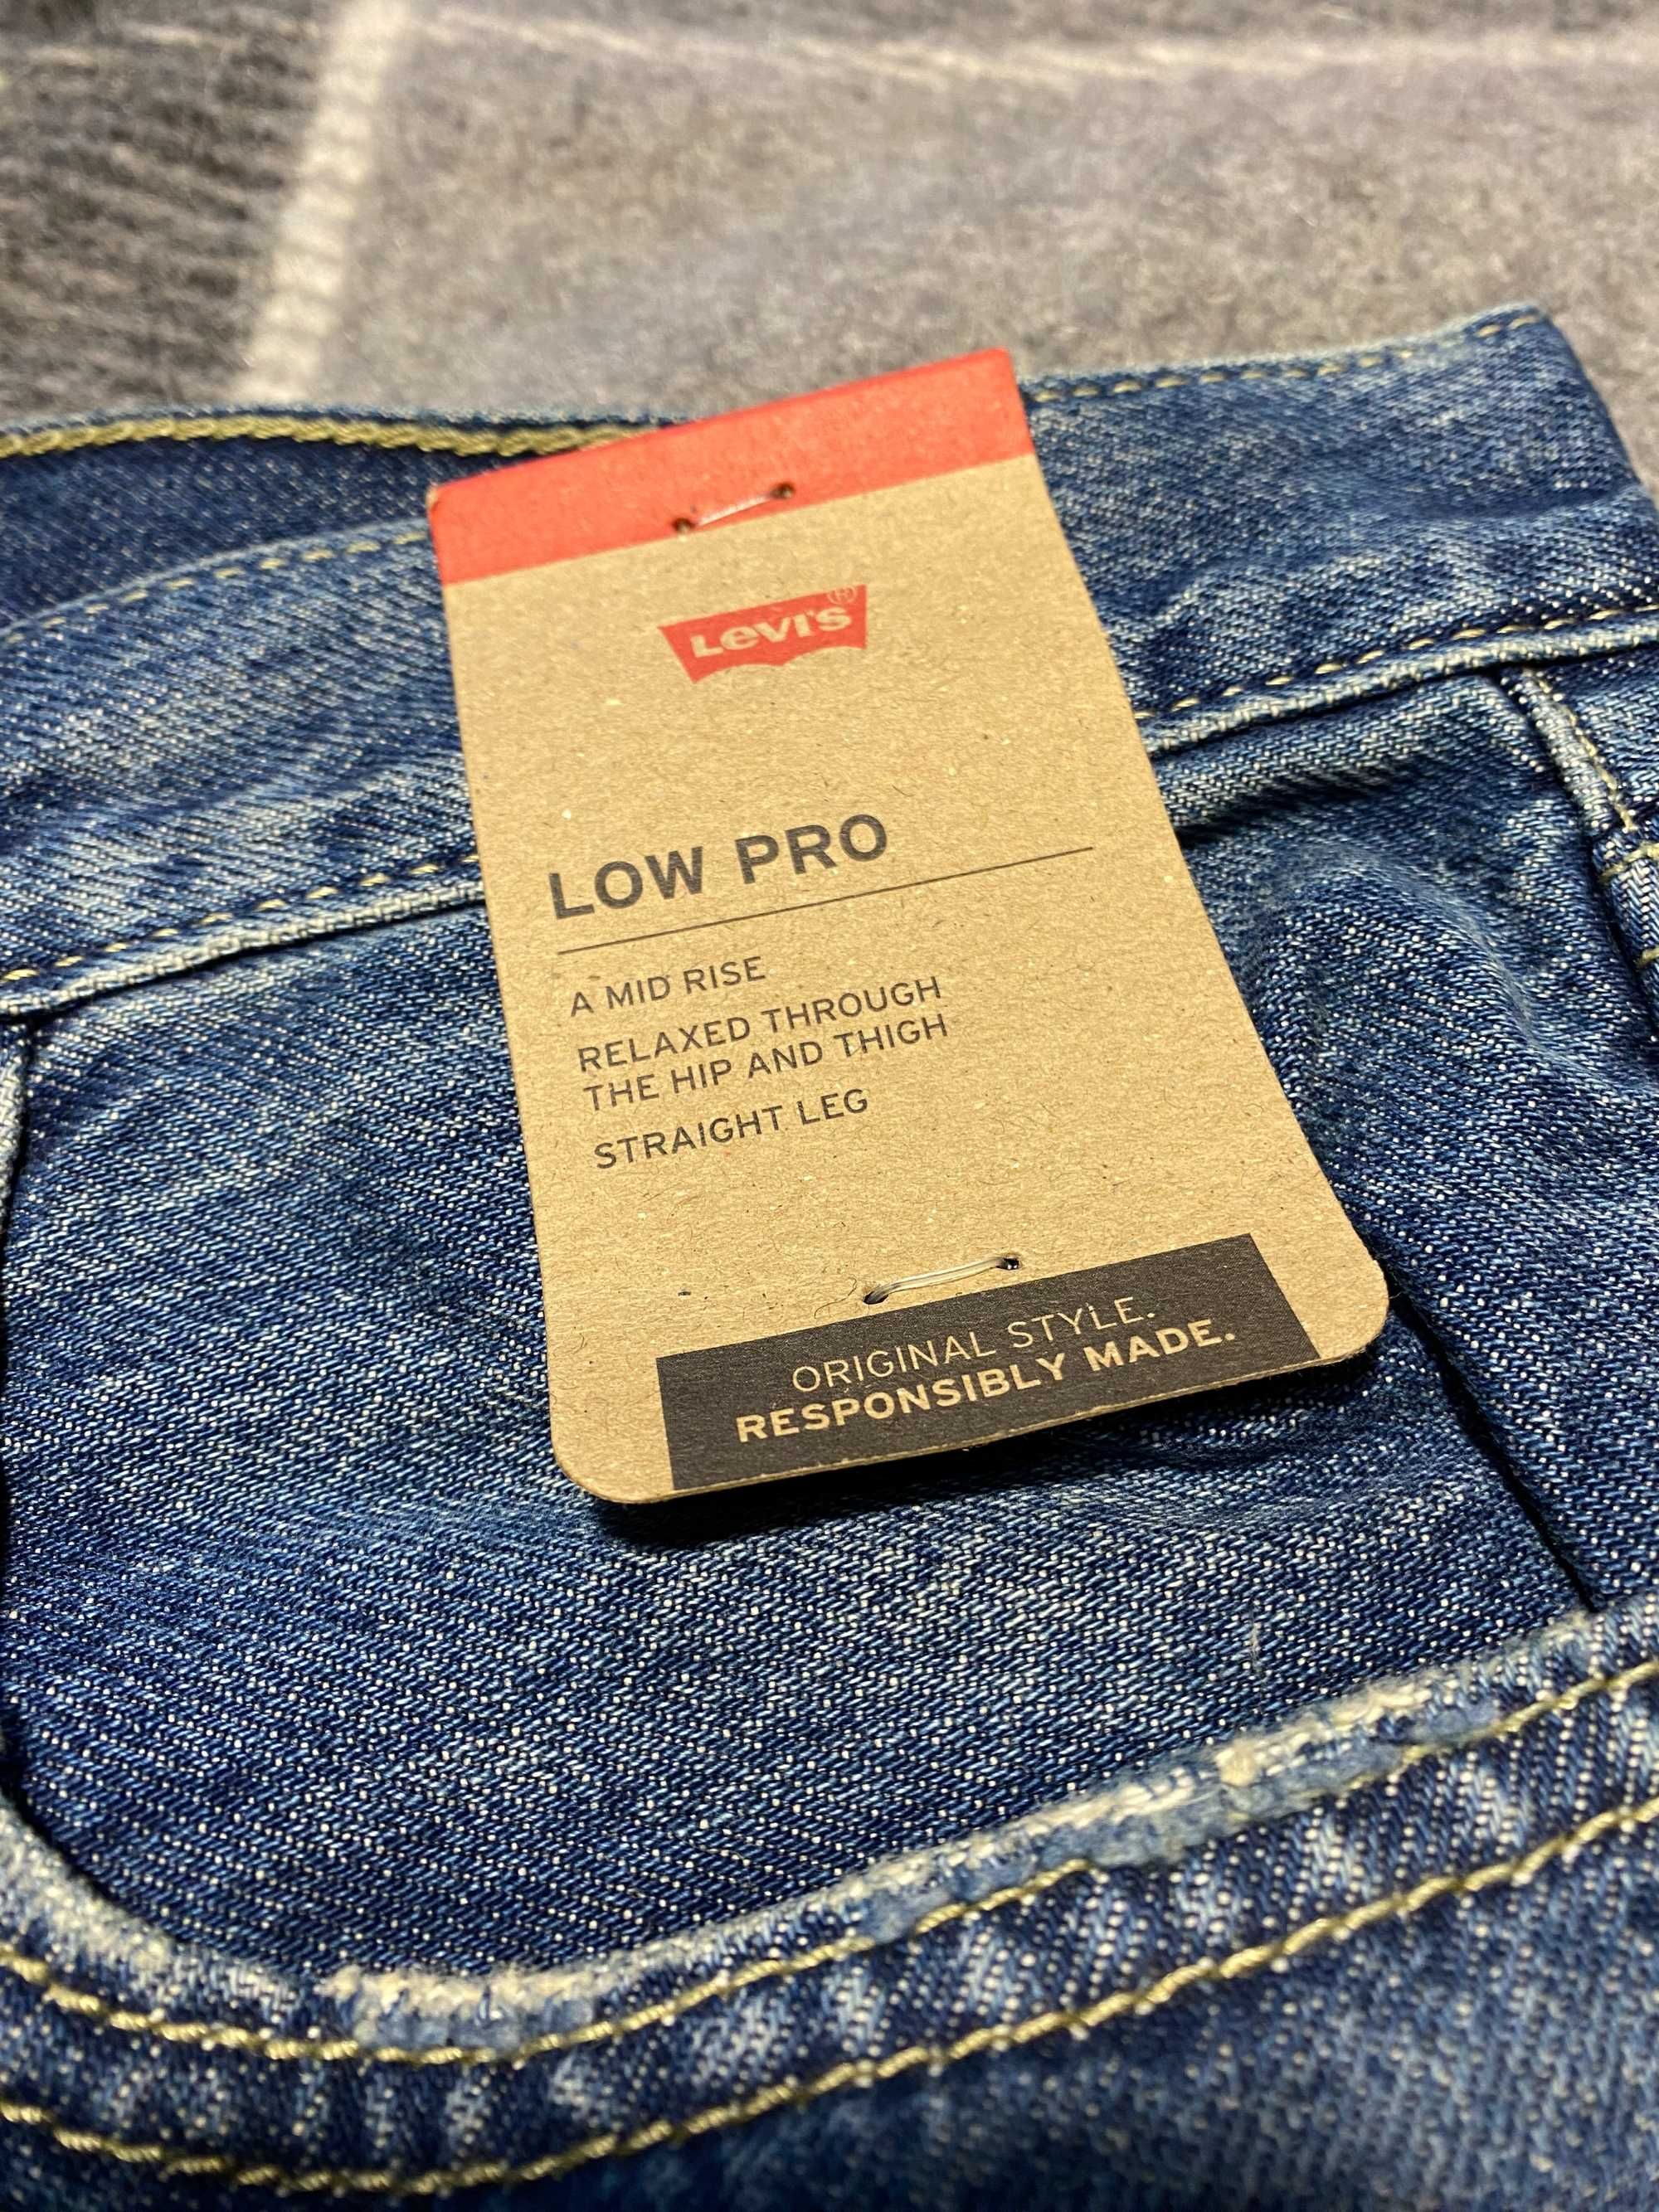 Жіночі джинси Levi's Low Pro Women's Jeans